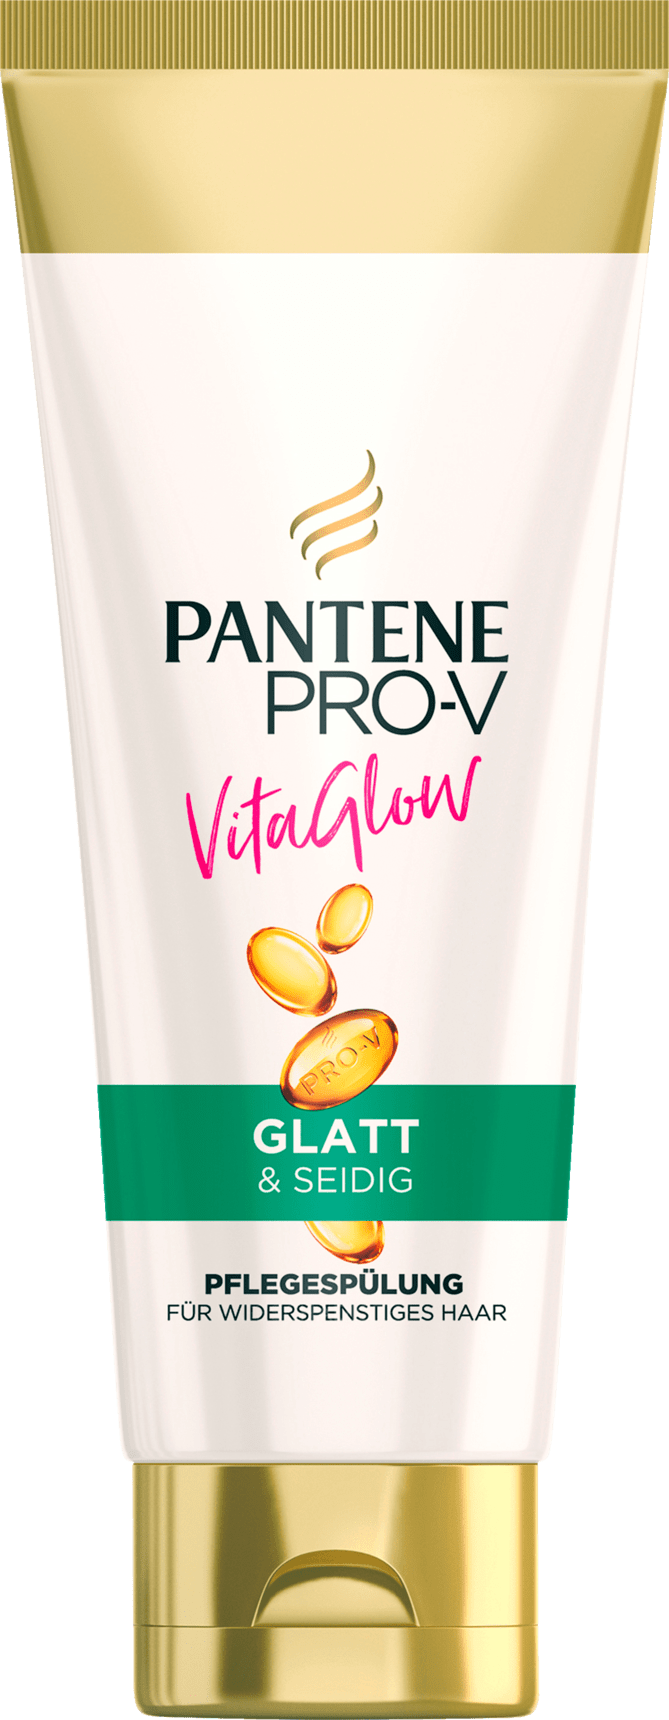 PANTENE PRO-V Flushing Vita Glow Smooth&Silky, 200 Ml